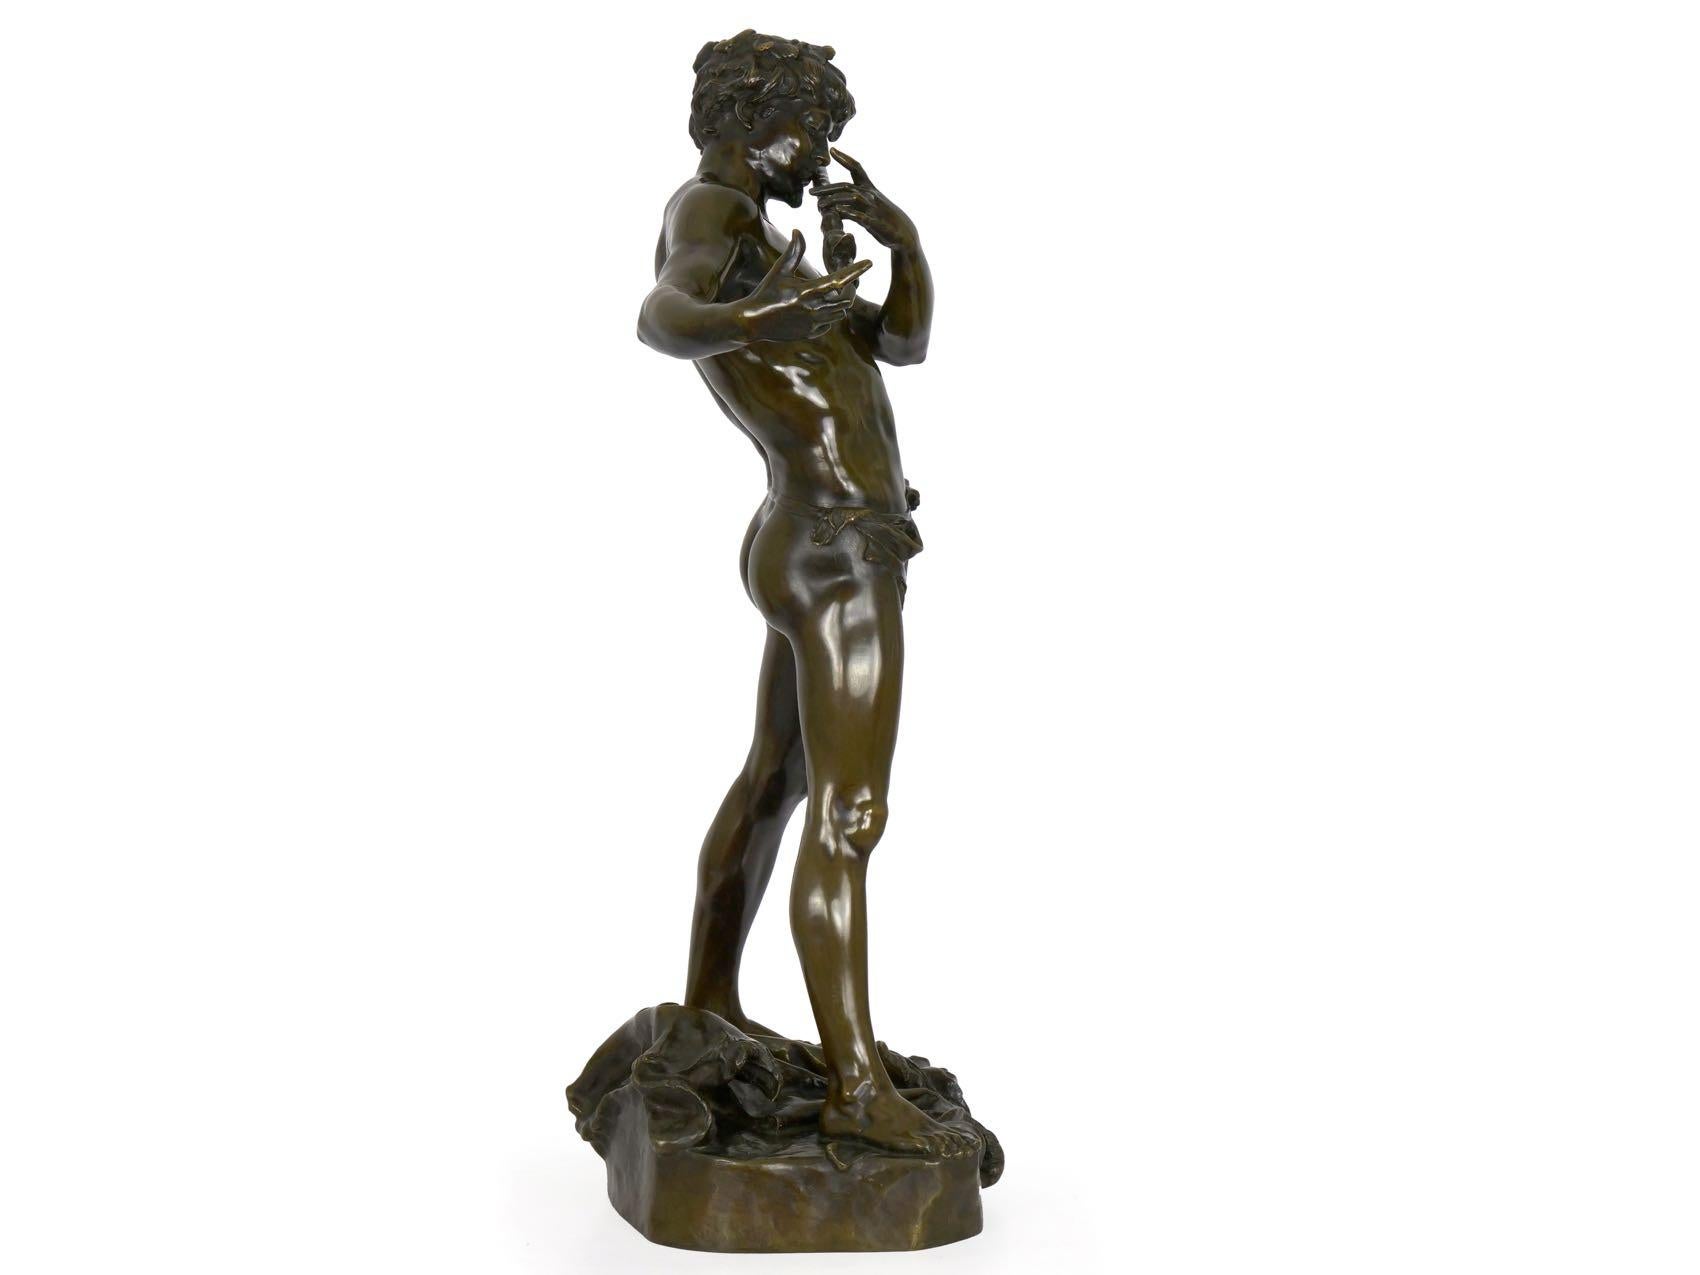 French Antique Bronze Sculpture “L’Improvisateur” by Felix Charpentier & Colin 7